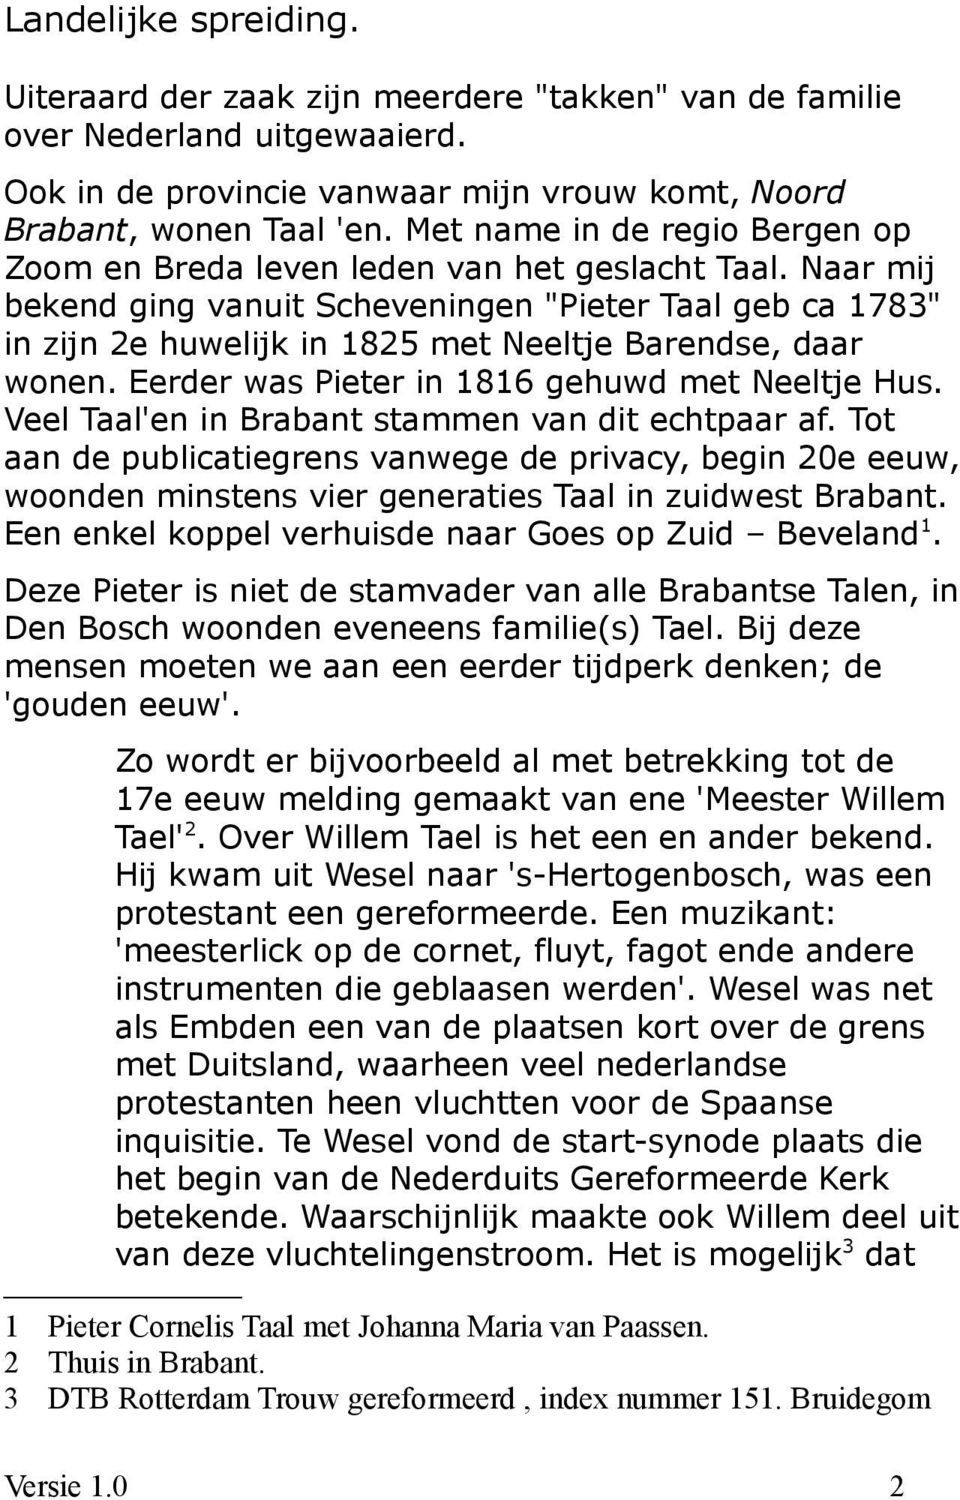 Naar mij bekend ging vanuit Scheveningen "Pieter Taal geb ca 1783" in zijn 2e huwelijk in 1825 met Neeltje Barendse, daar wonen. Eerder was Pieter in 1816 gehuwd met Neeltje Hus.